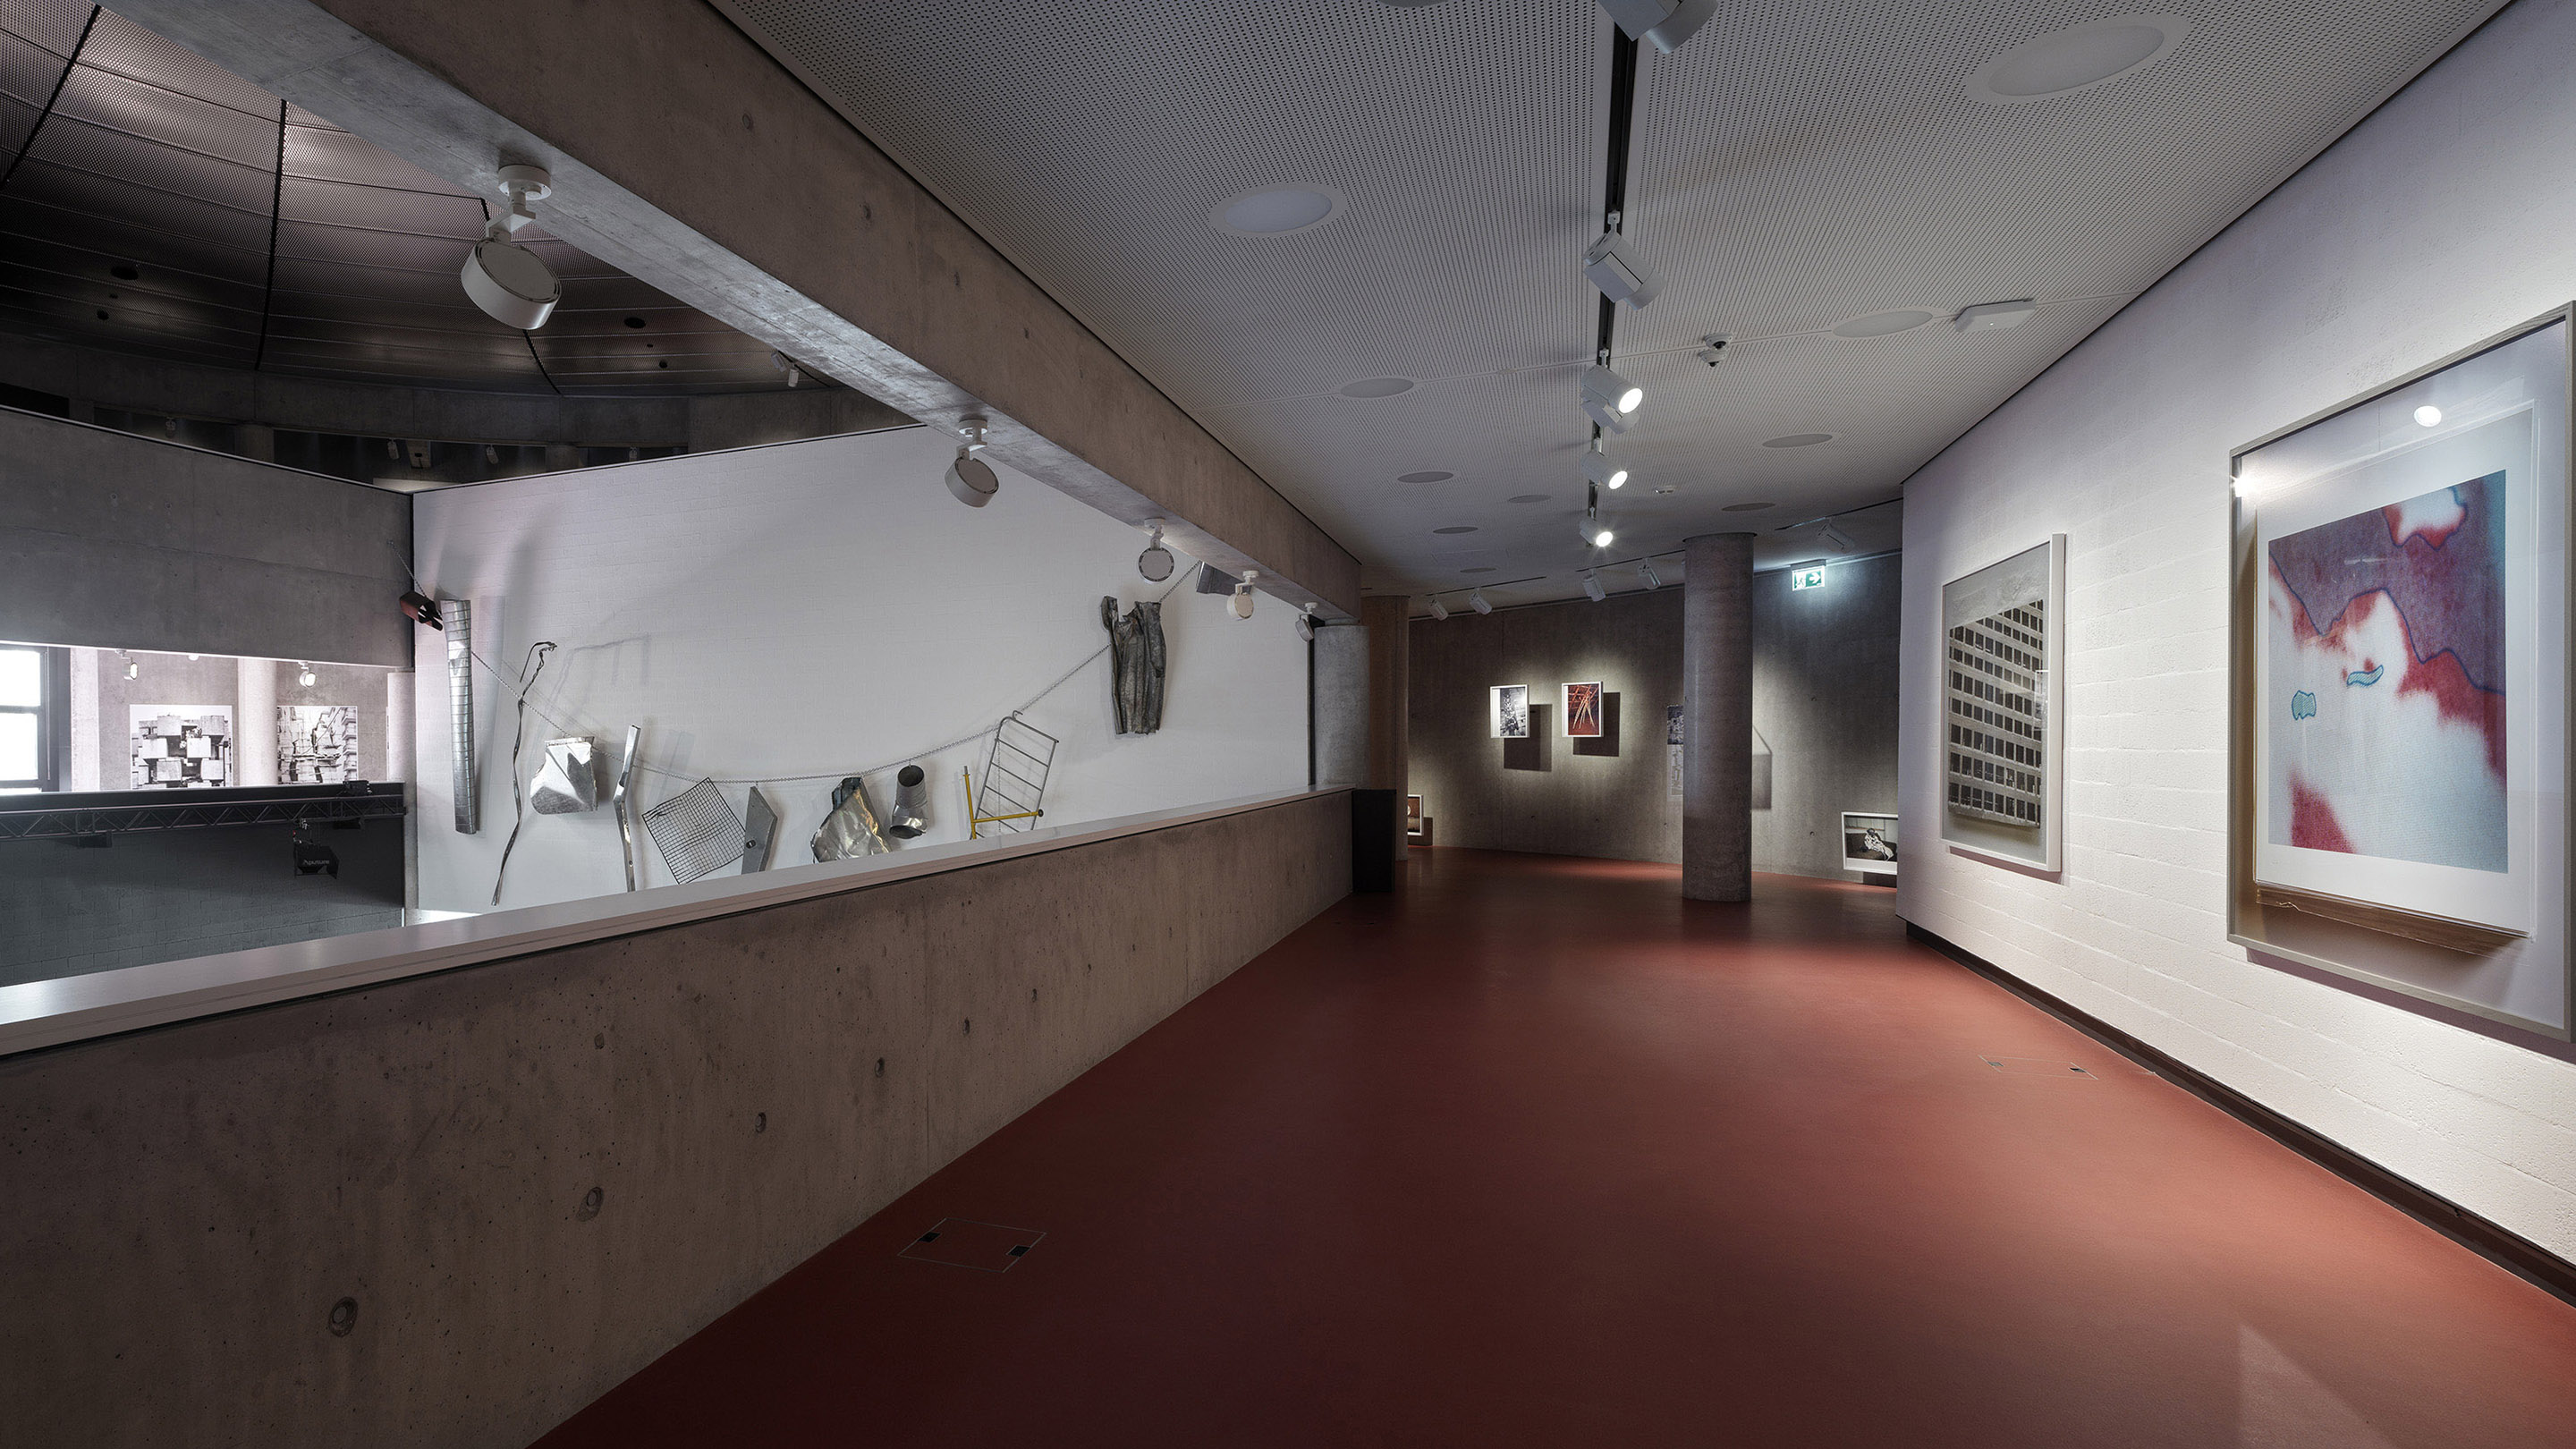  Exhibition ʹWHAT MAD PURSUIT. Aglaia Konrad, Armin Linke, Bas Princenʹ, Teatro dell’architettura Mendrisio, Photo by Enrico Cano